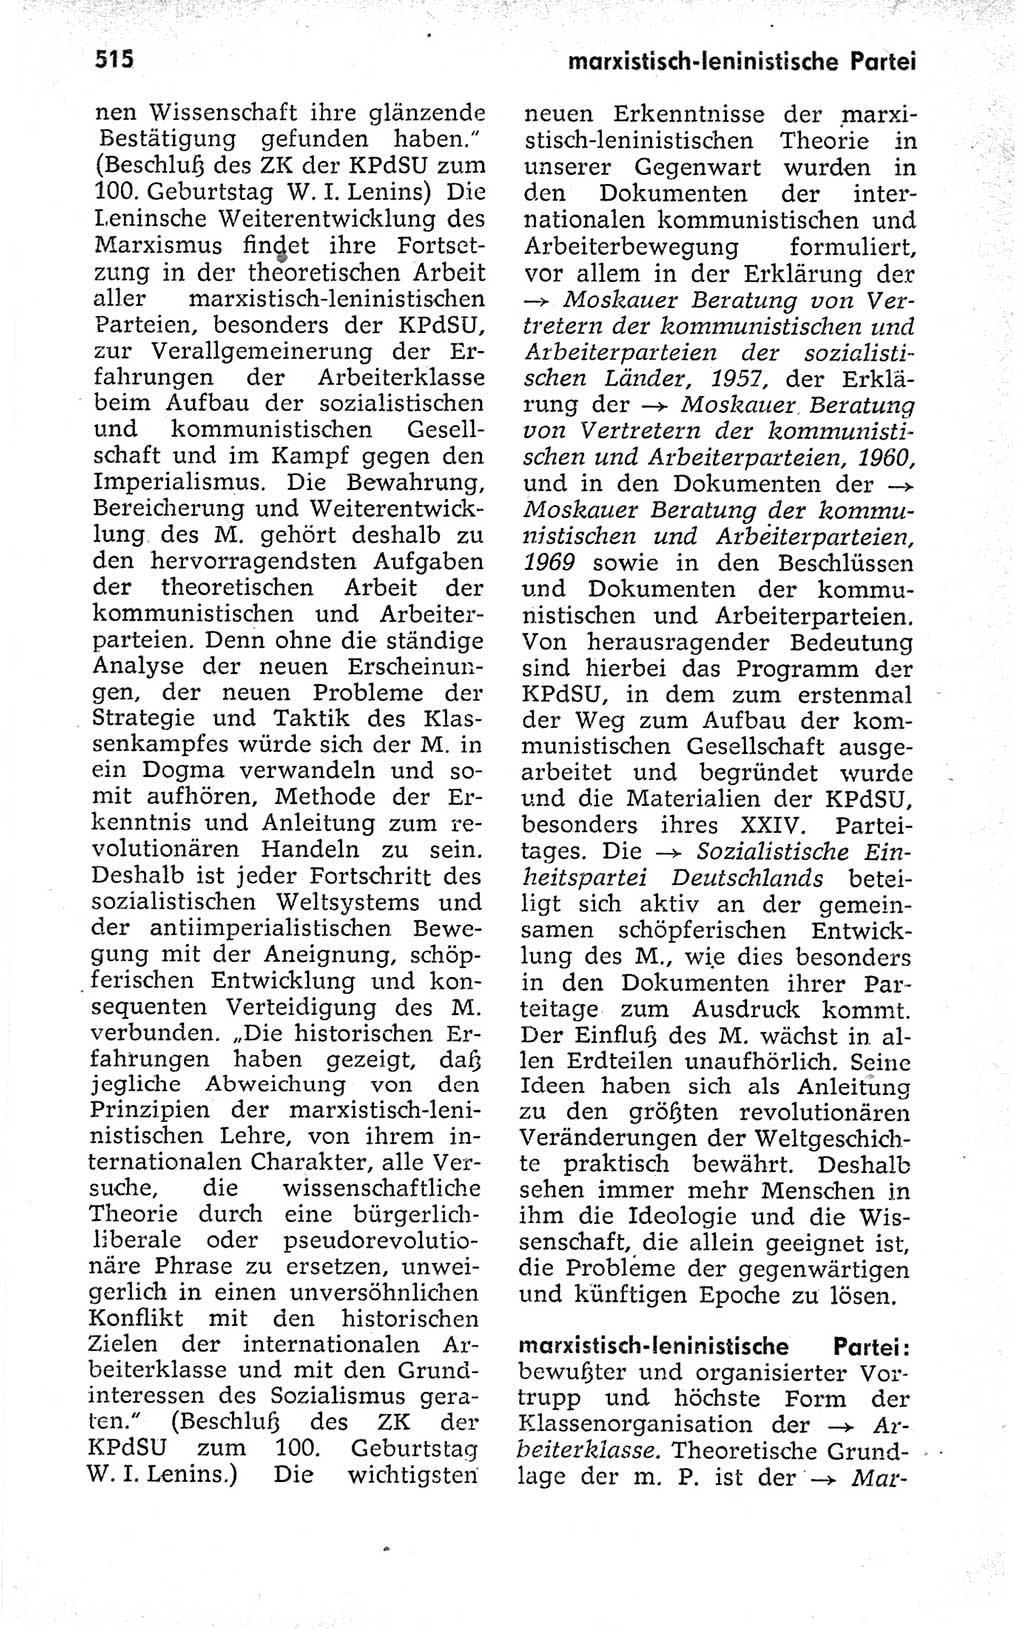 Kleines politisches Wörterbuch [Deutsche Demokratische Republik (DDR)] 1973, Seite 515 (Kl. pol. Wb. DDR 1973, S. 515)